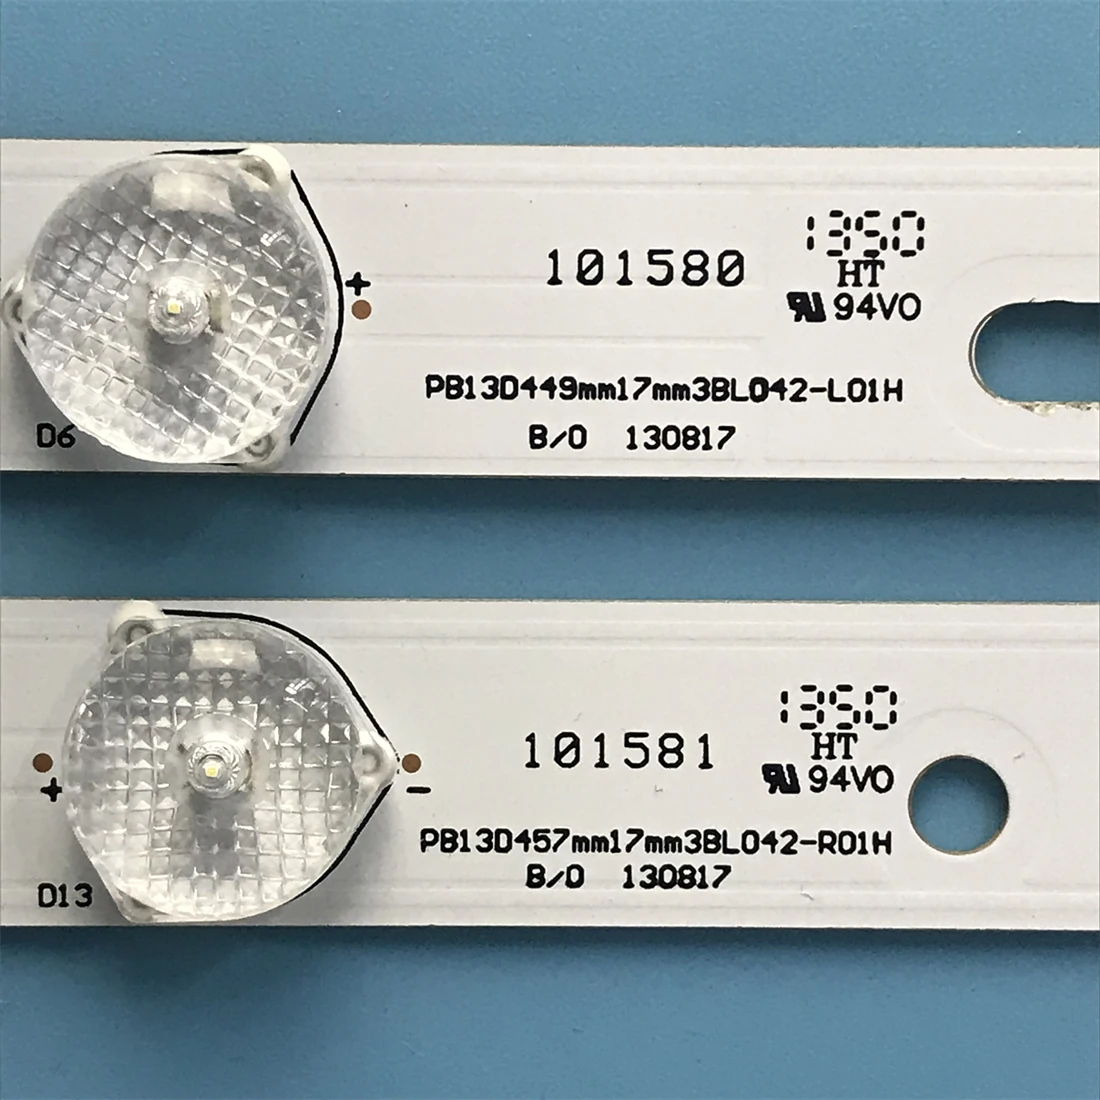 906 мм led лента подсветка 14 лампи за PB13D449mm17mm3BL042-L01H PB13D457mm17mm3BL042-R01H Изображение 1